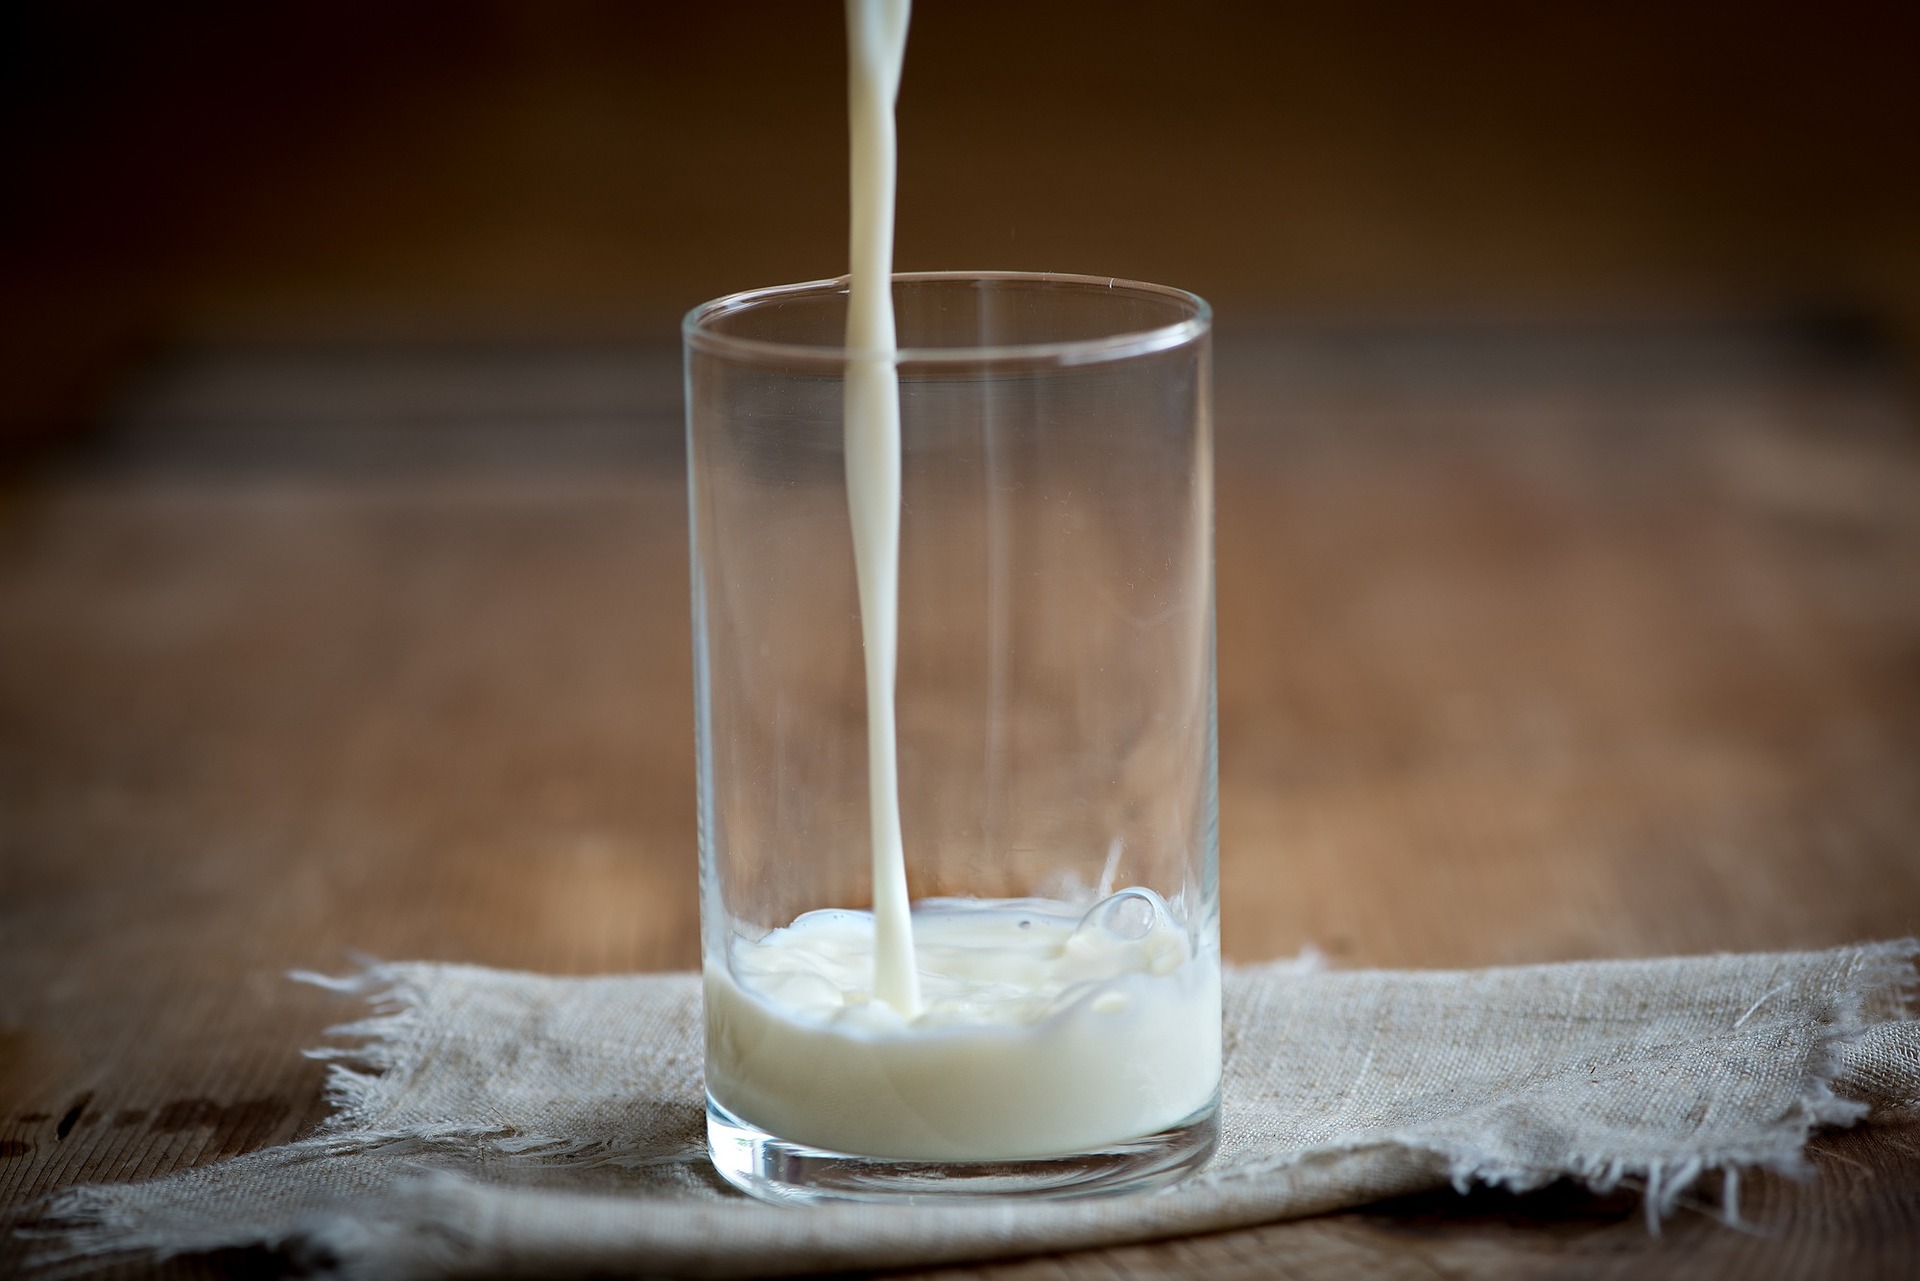 Thumbnail for Proprietà e benefici del latte nel pane e nei prodotti lievitati da forno